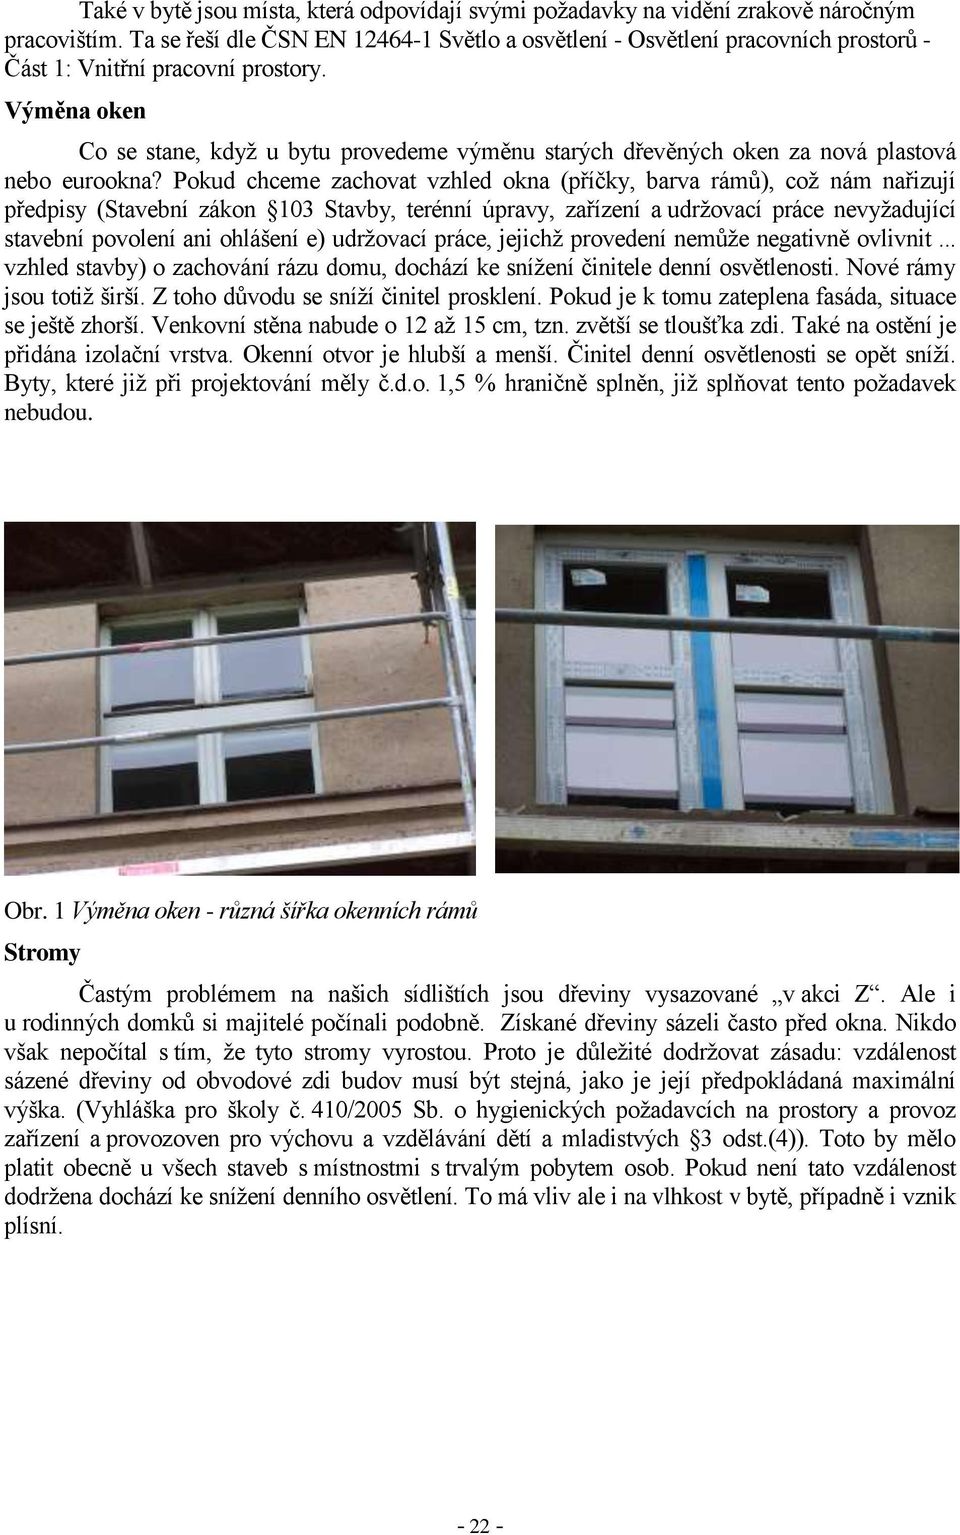 Výměna oken Co se stane, když u bytu provedeme výměnu starých dřevěných oken za nová plastová nebo eurookna?